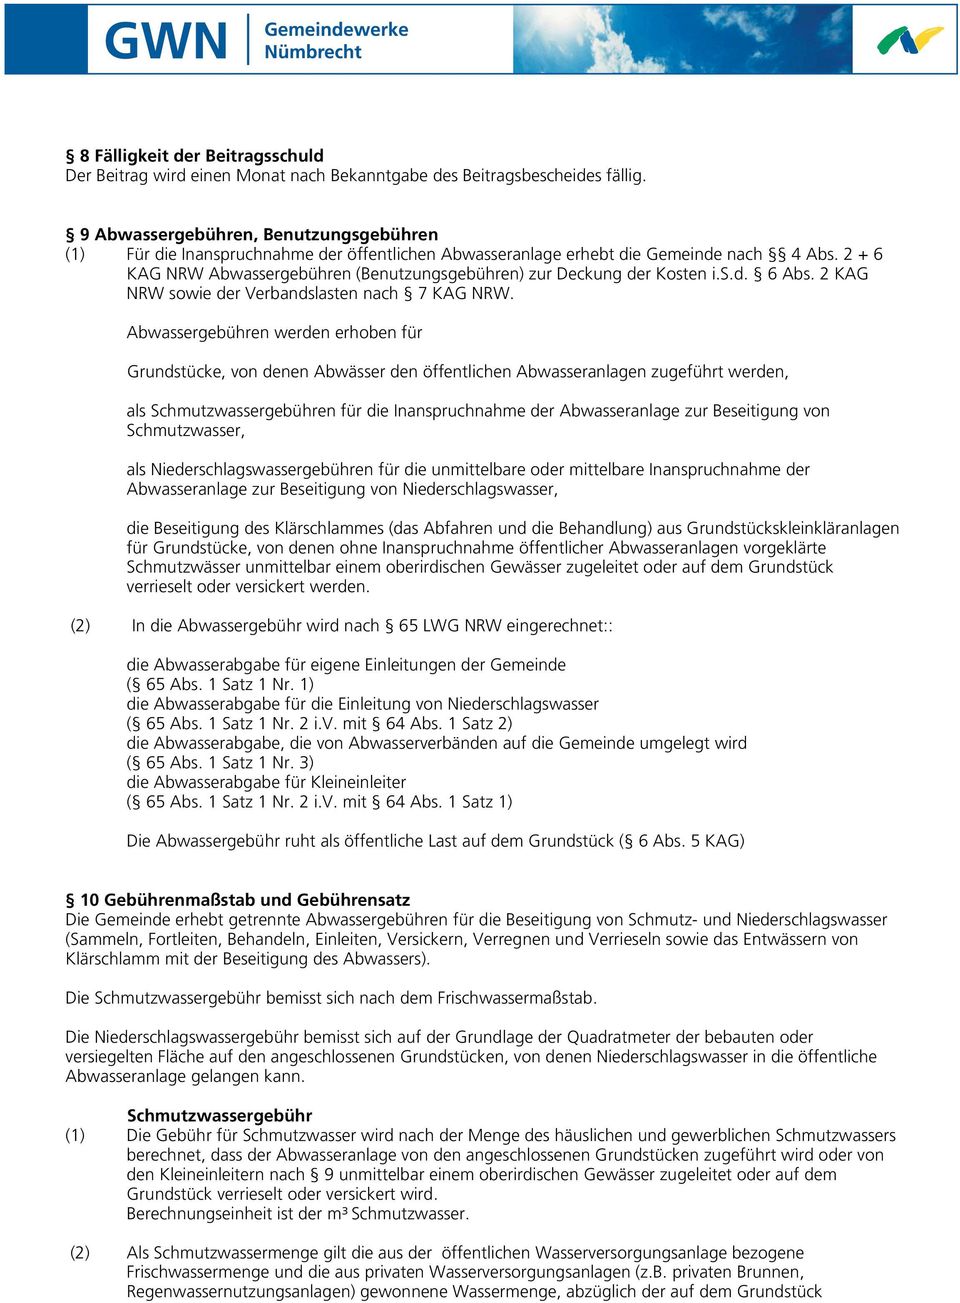 2 + 6 KAG NRW Abwassergebühren (Benutzungsgebühren) zur Deckung der Kosten i.s.d. 6 Abs. 2 KAG NRW sowie der Verbandslasten nach 7 KAG NRW.